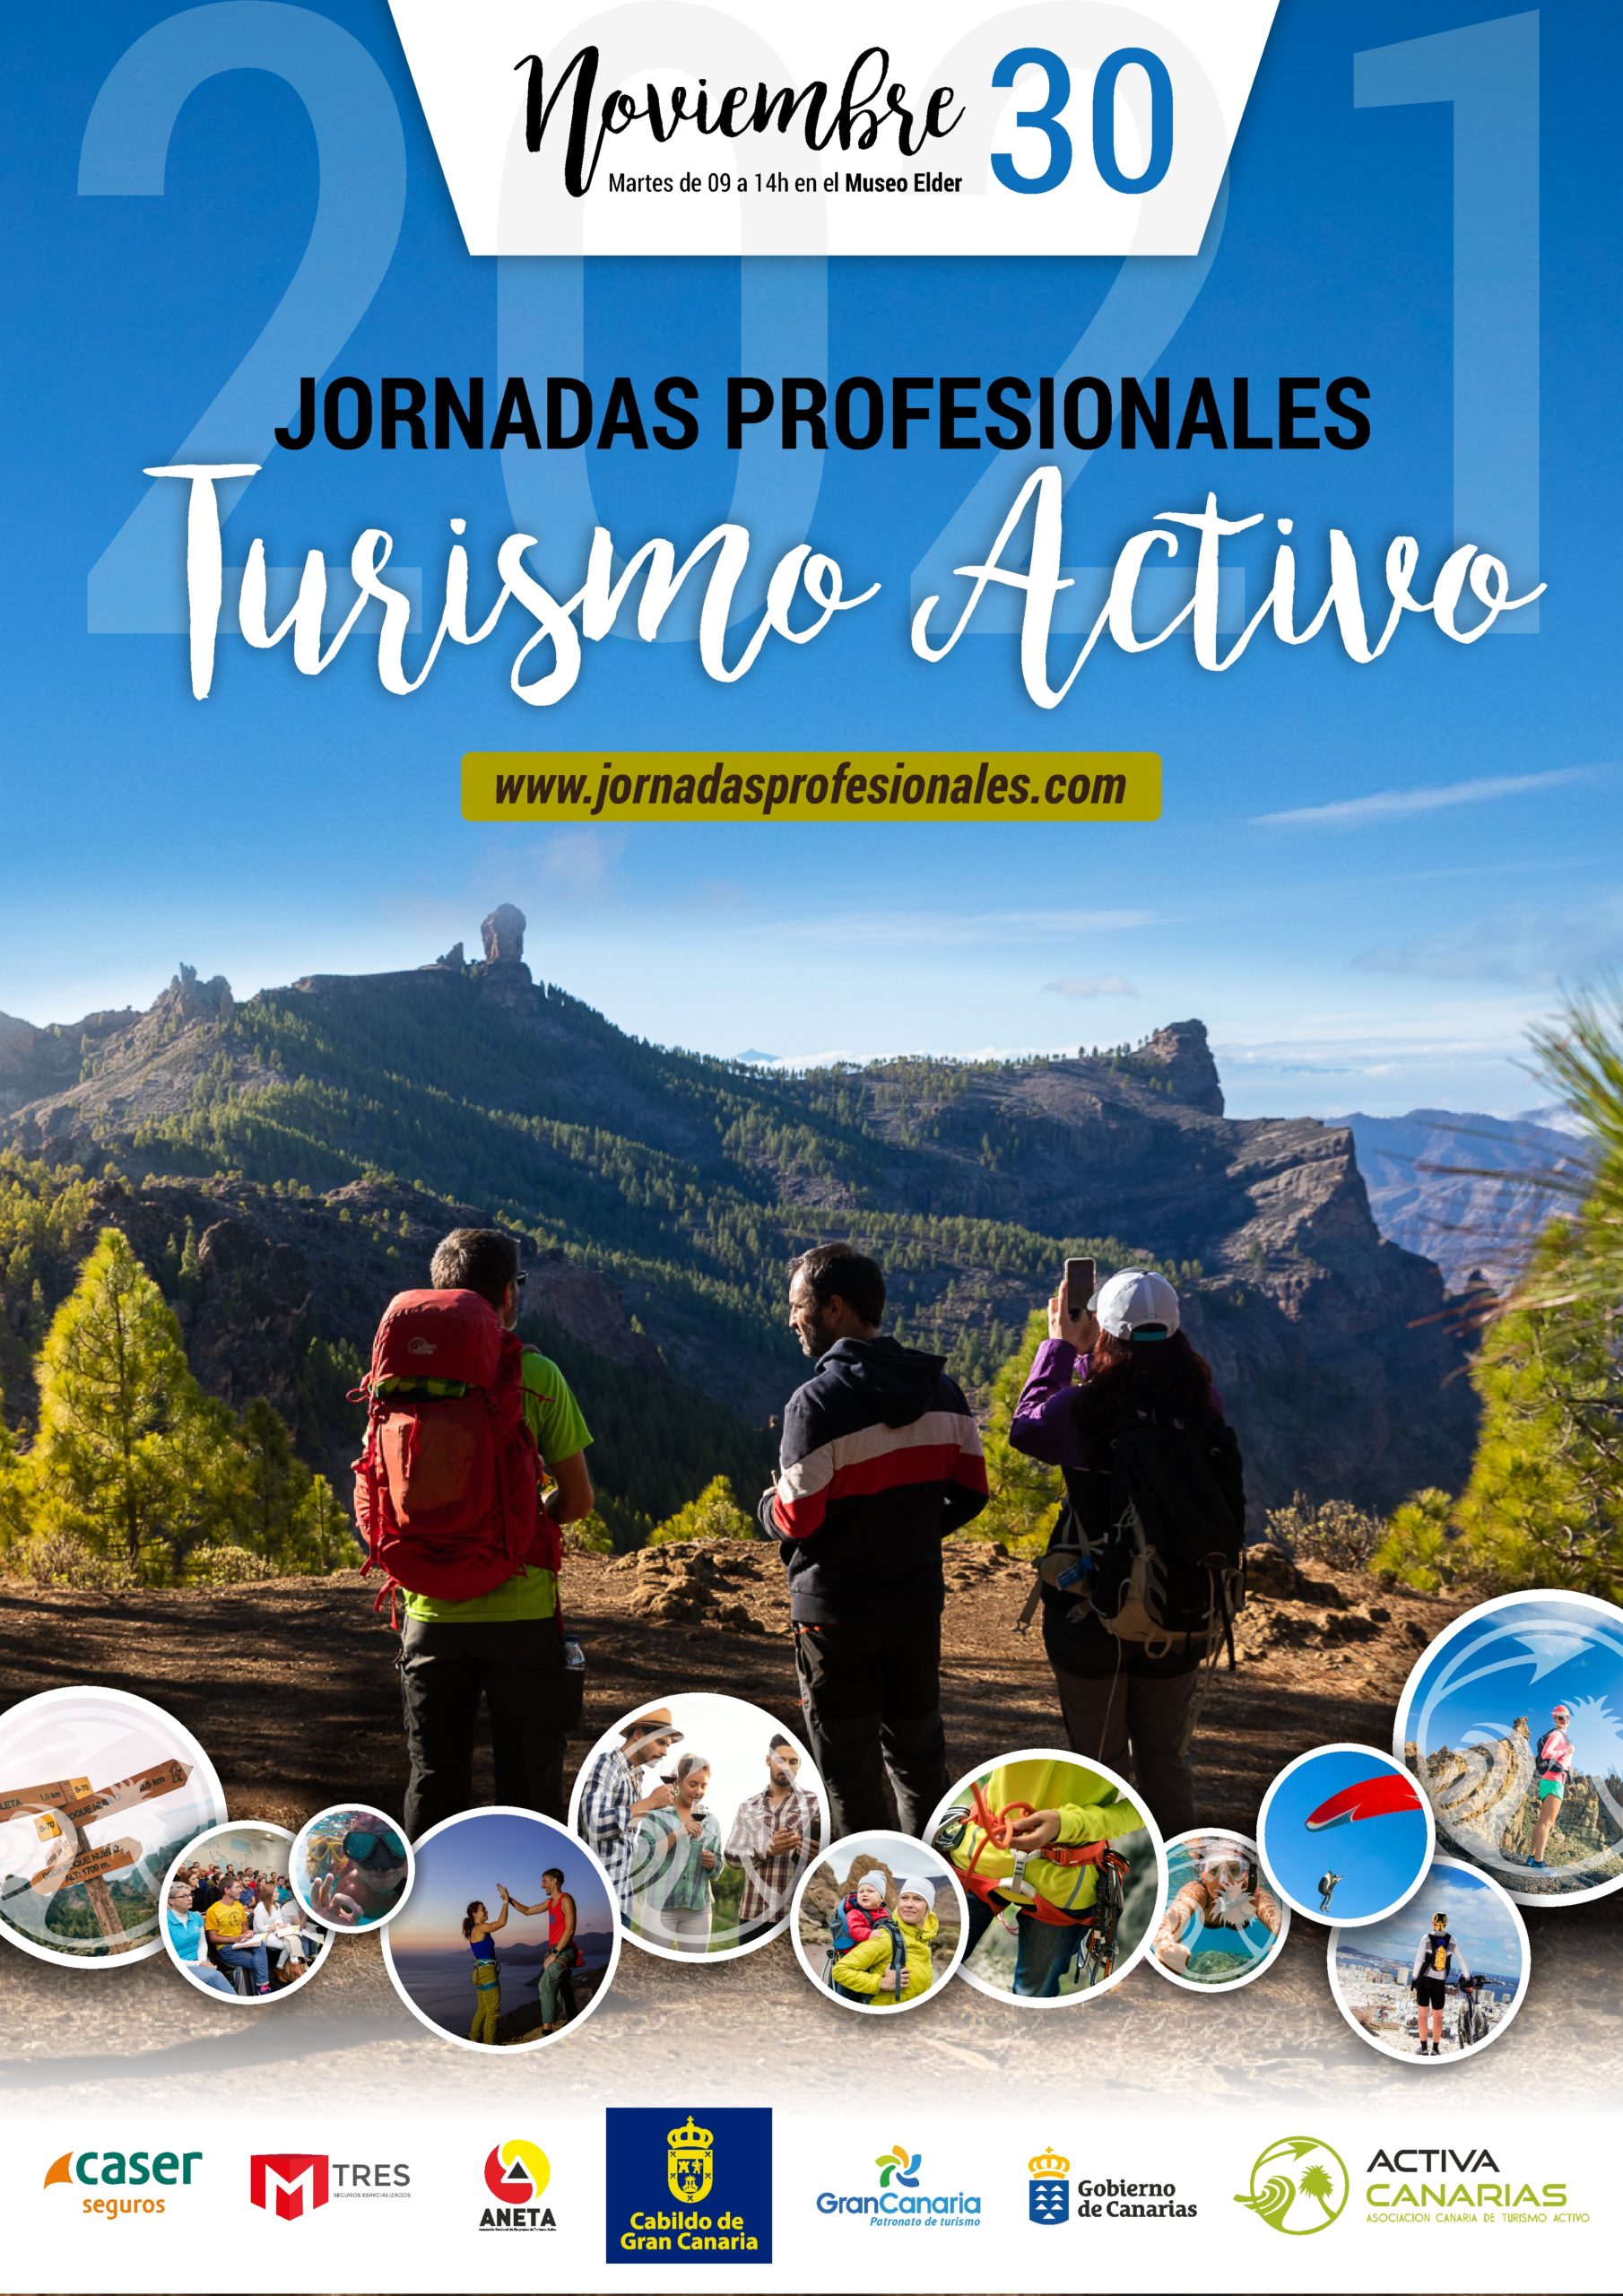 Activa Canarias fomenta las relaciones transversales en la cadena de valor turística